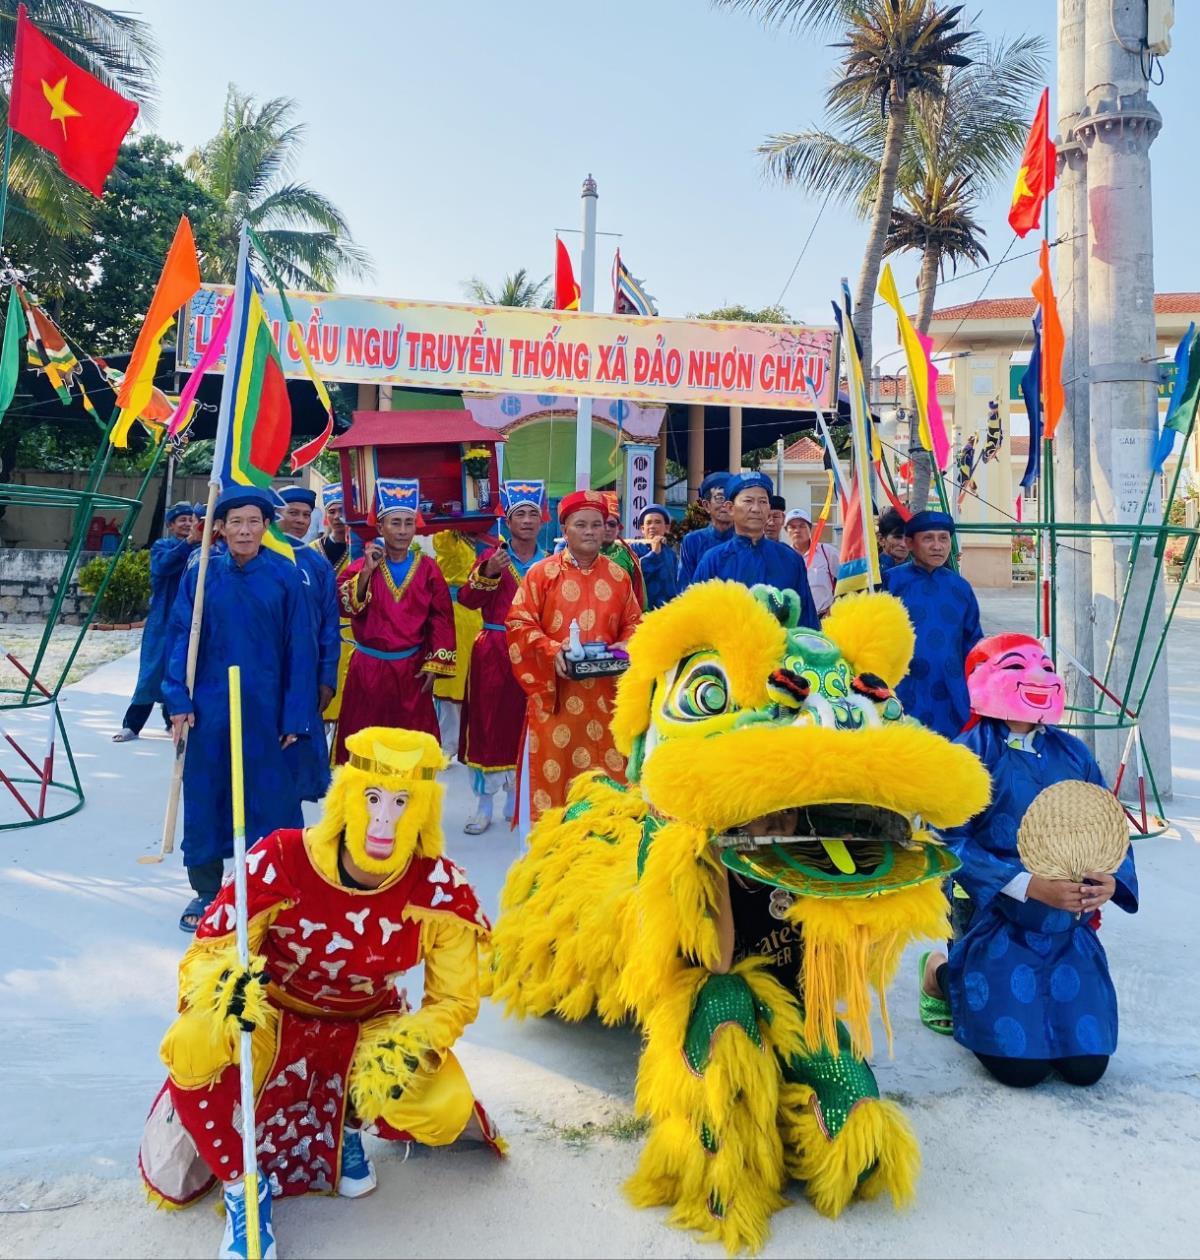 Bình Đình: Rộn ràng Lễ hội cầu ngư ở xã đảo Nhơn Châu